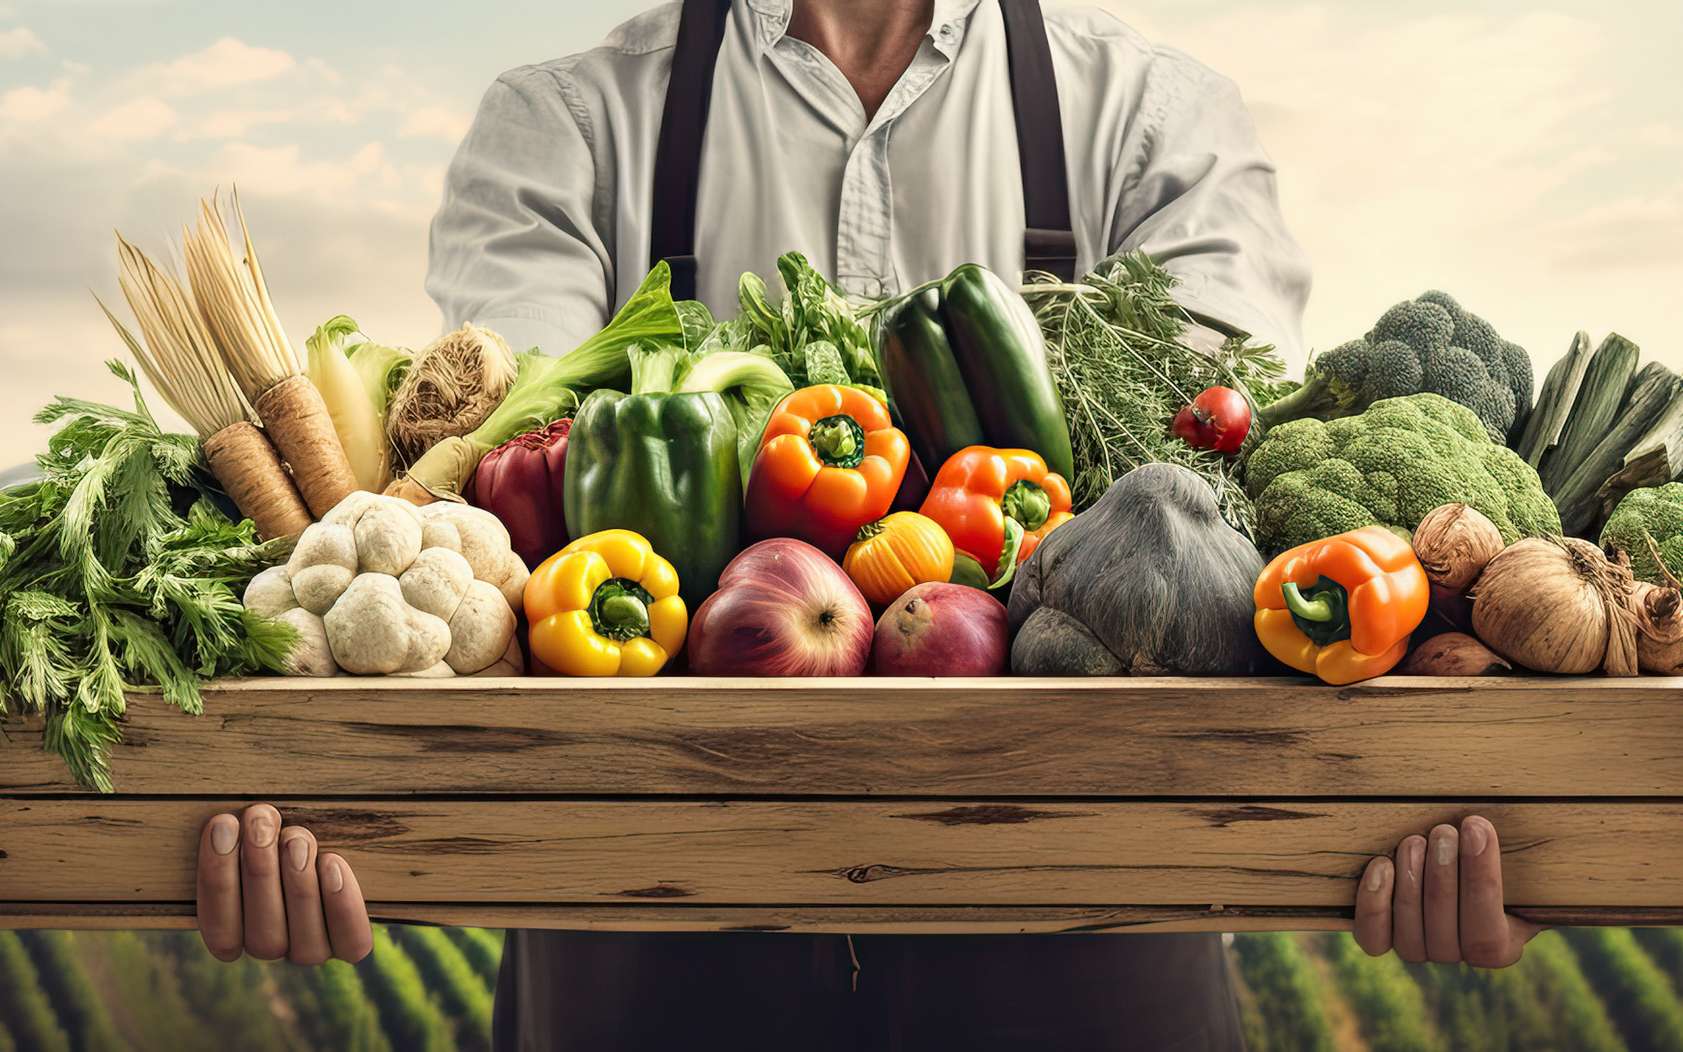 Nos choix d'alimentation déterminent le futur de notre Planète